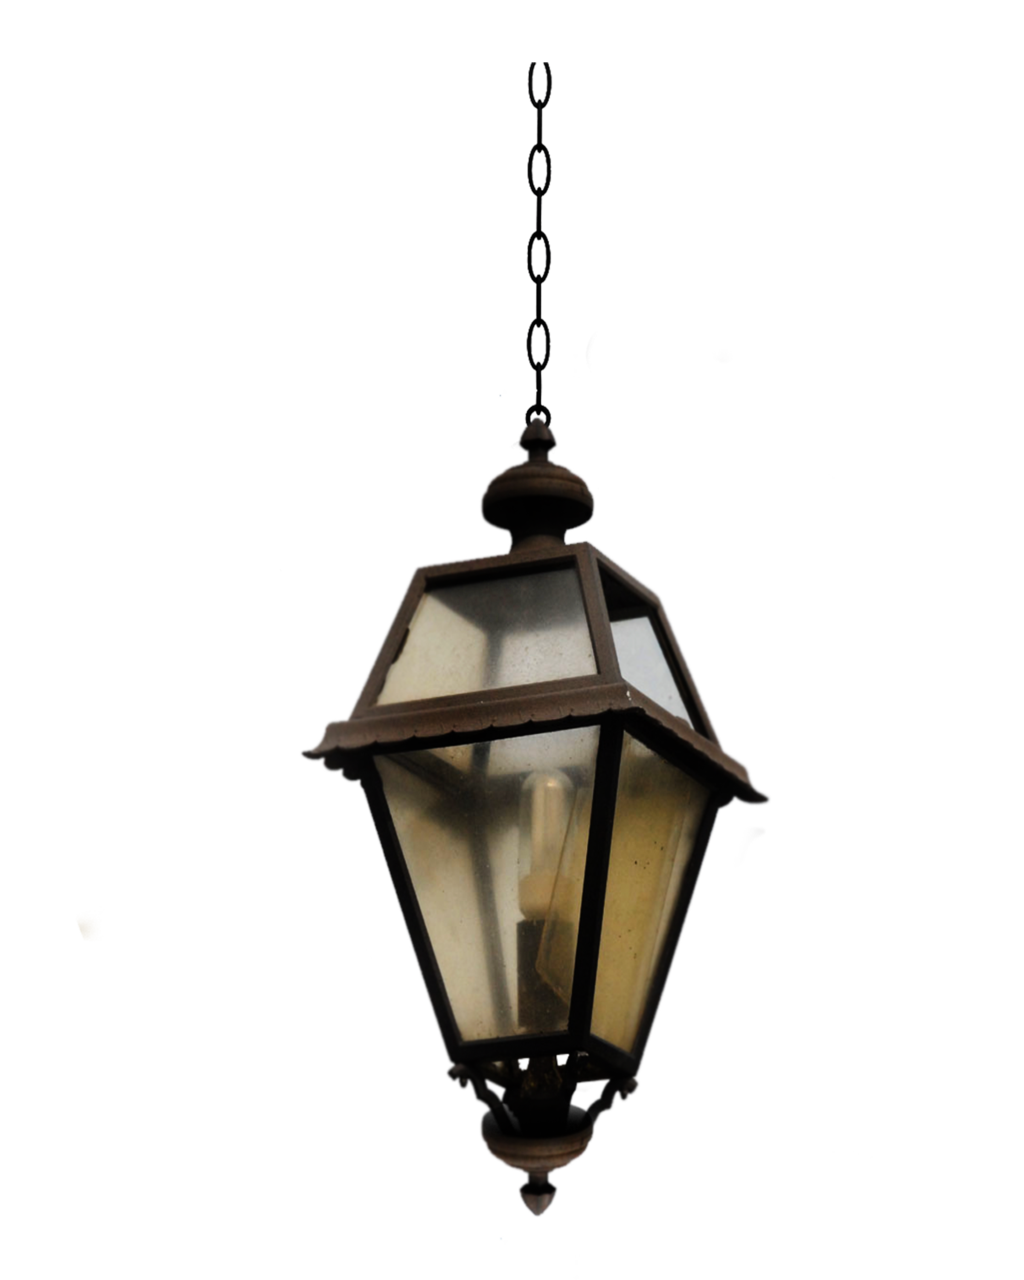 Download PNG image - Chandelier Light Lamp PNG Image 